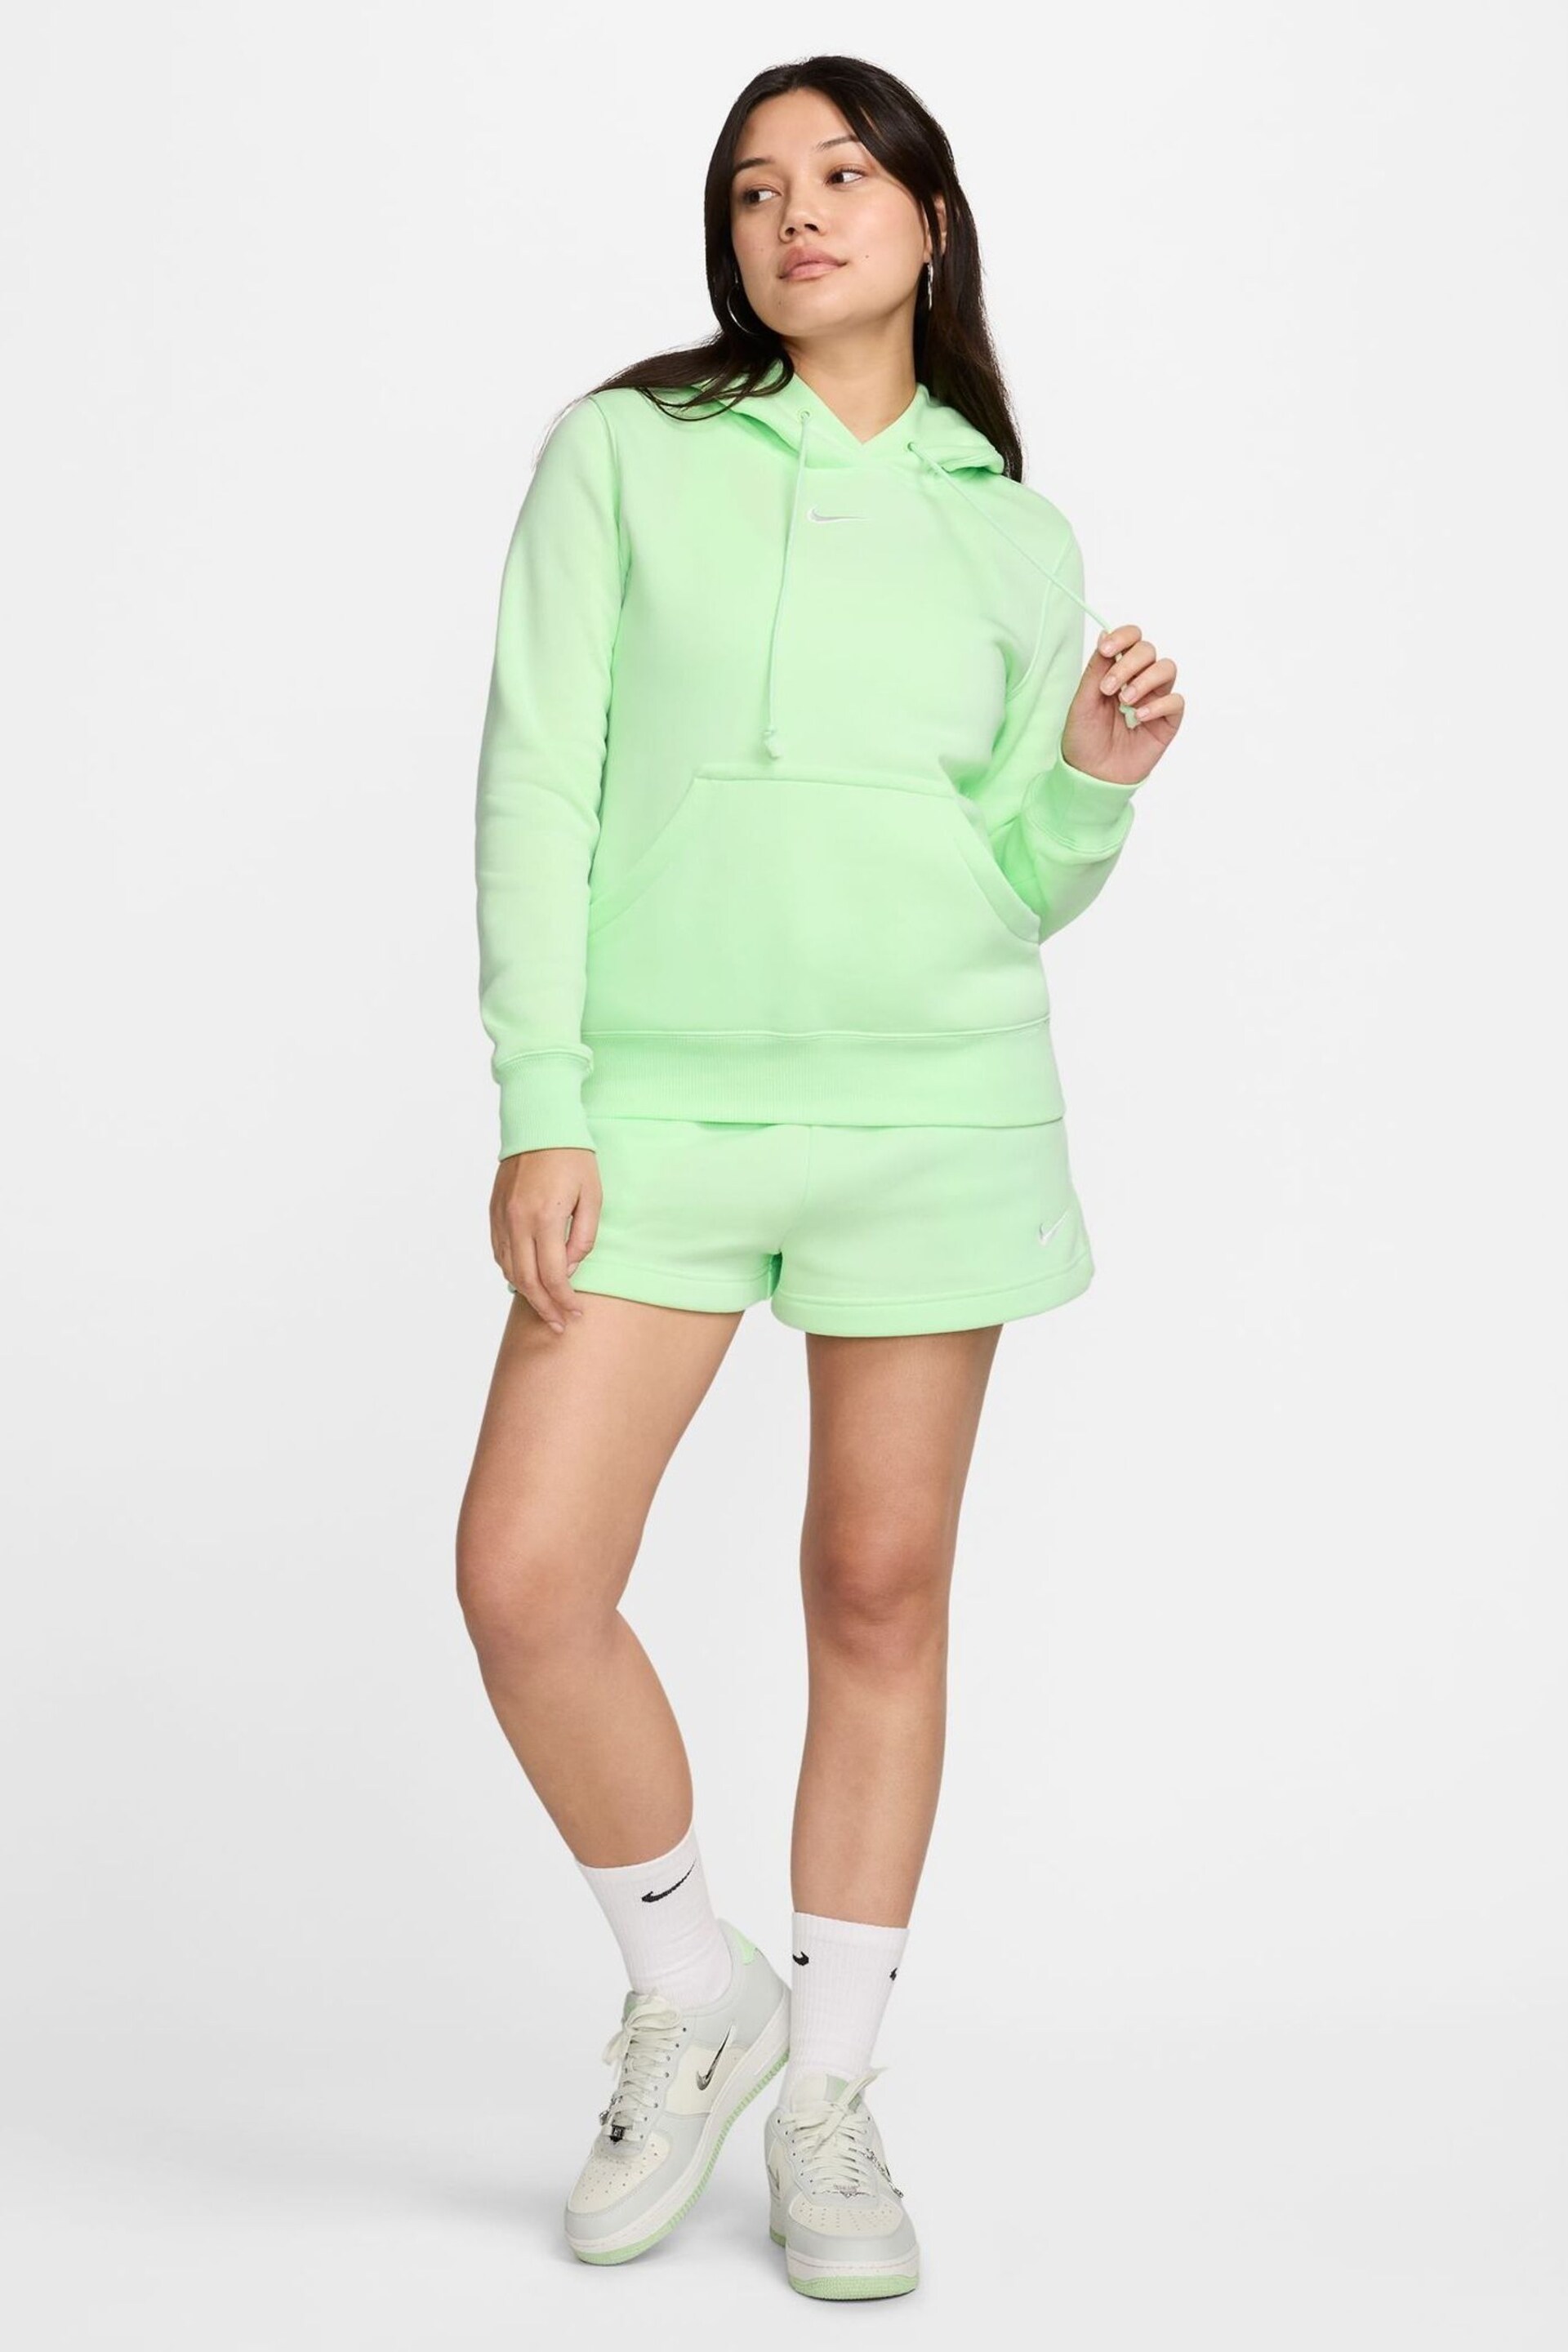 Nike Green Sportswear Phoenix Fleece Pullover Hoodie - Image 9 of 9